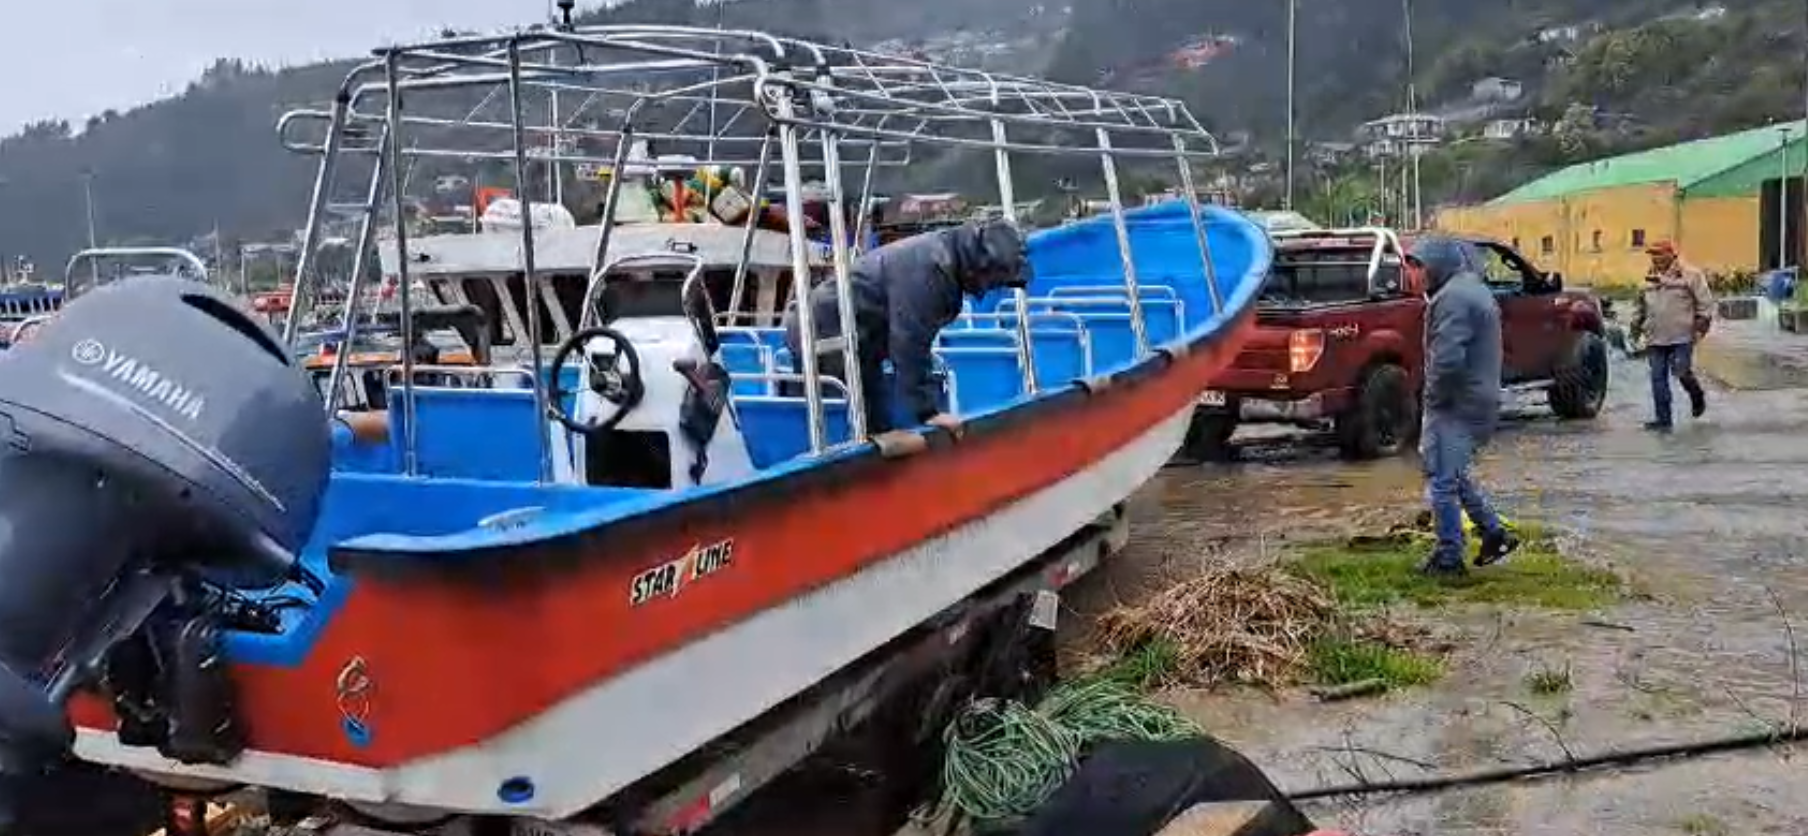 Turismo fluvial: Pescadores de Queule adquieren nueva embarcación para ofrecer paseos